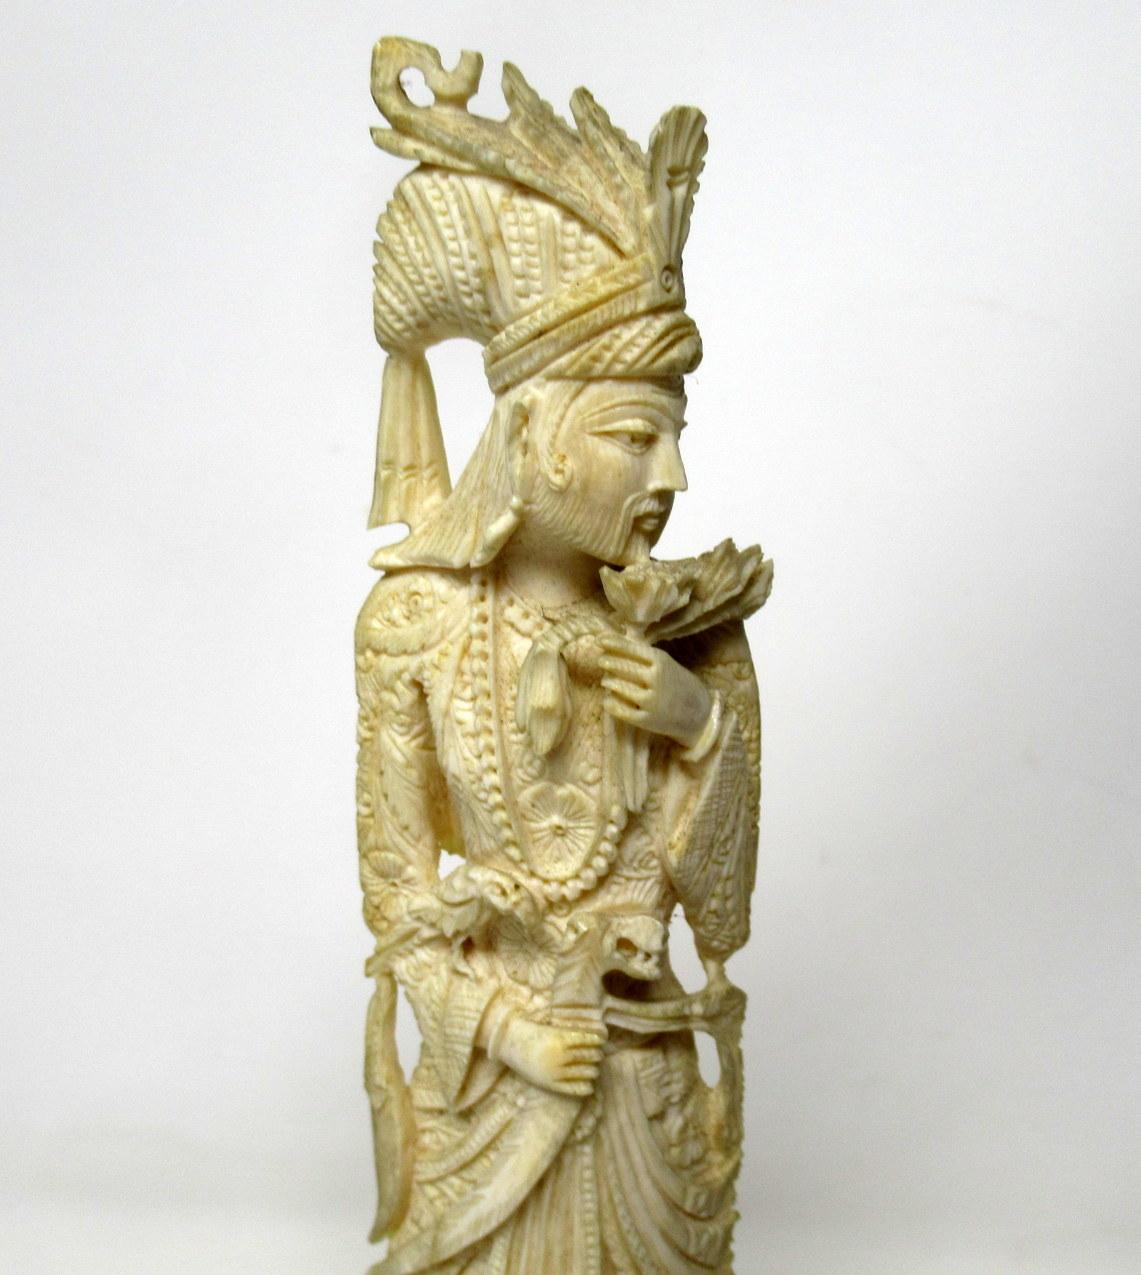 Eine exquisit handgeschnitzte chinesische Würdenträger-Stehfigur aus Knochen, die einen üppig gekleideten, bärtigen Mann darstellt.

Schwierig zu datieren, unserer Meinung nach im letzten Viertel des 19.

Gekennzeichnet durch schöne geschnitzte